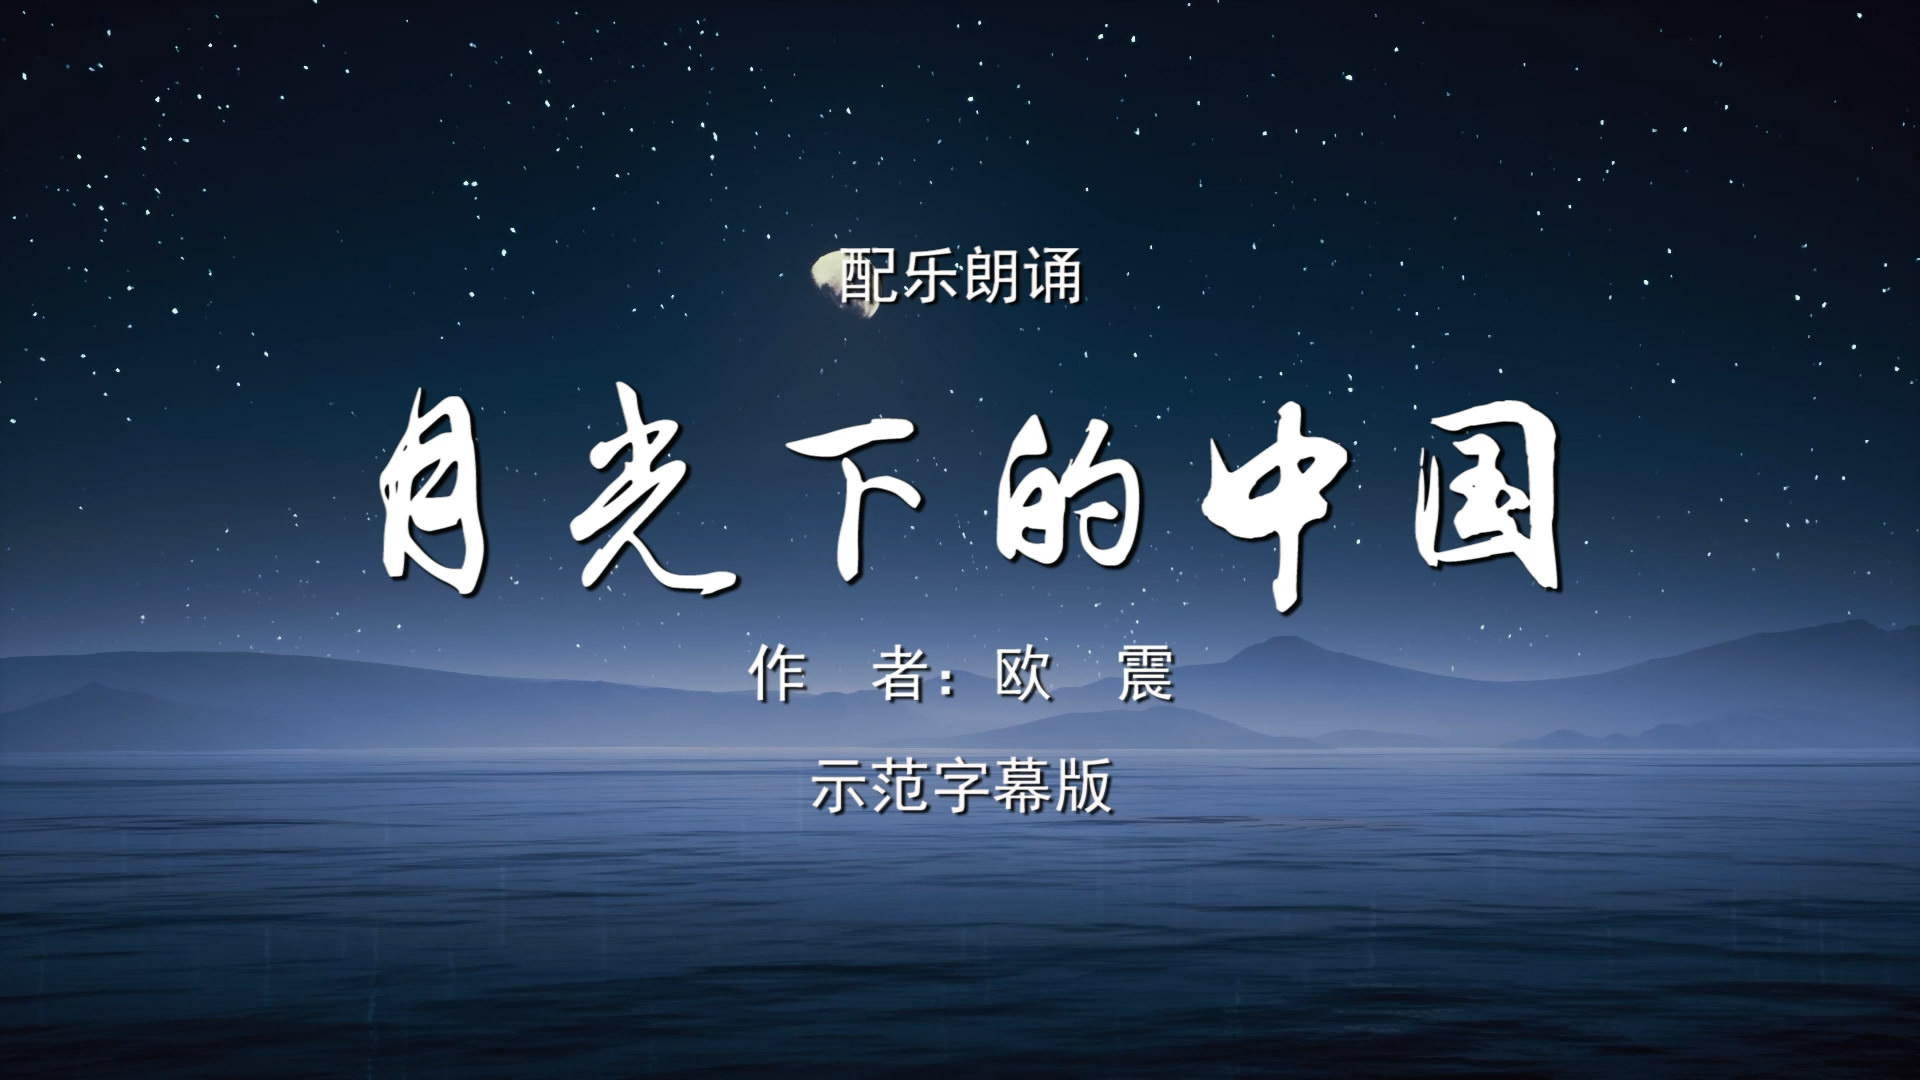 月光下的中国 男声版诗歌朗诵配乐伴奏舞台演出LED背景视频素材TV